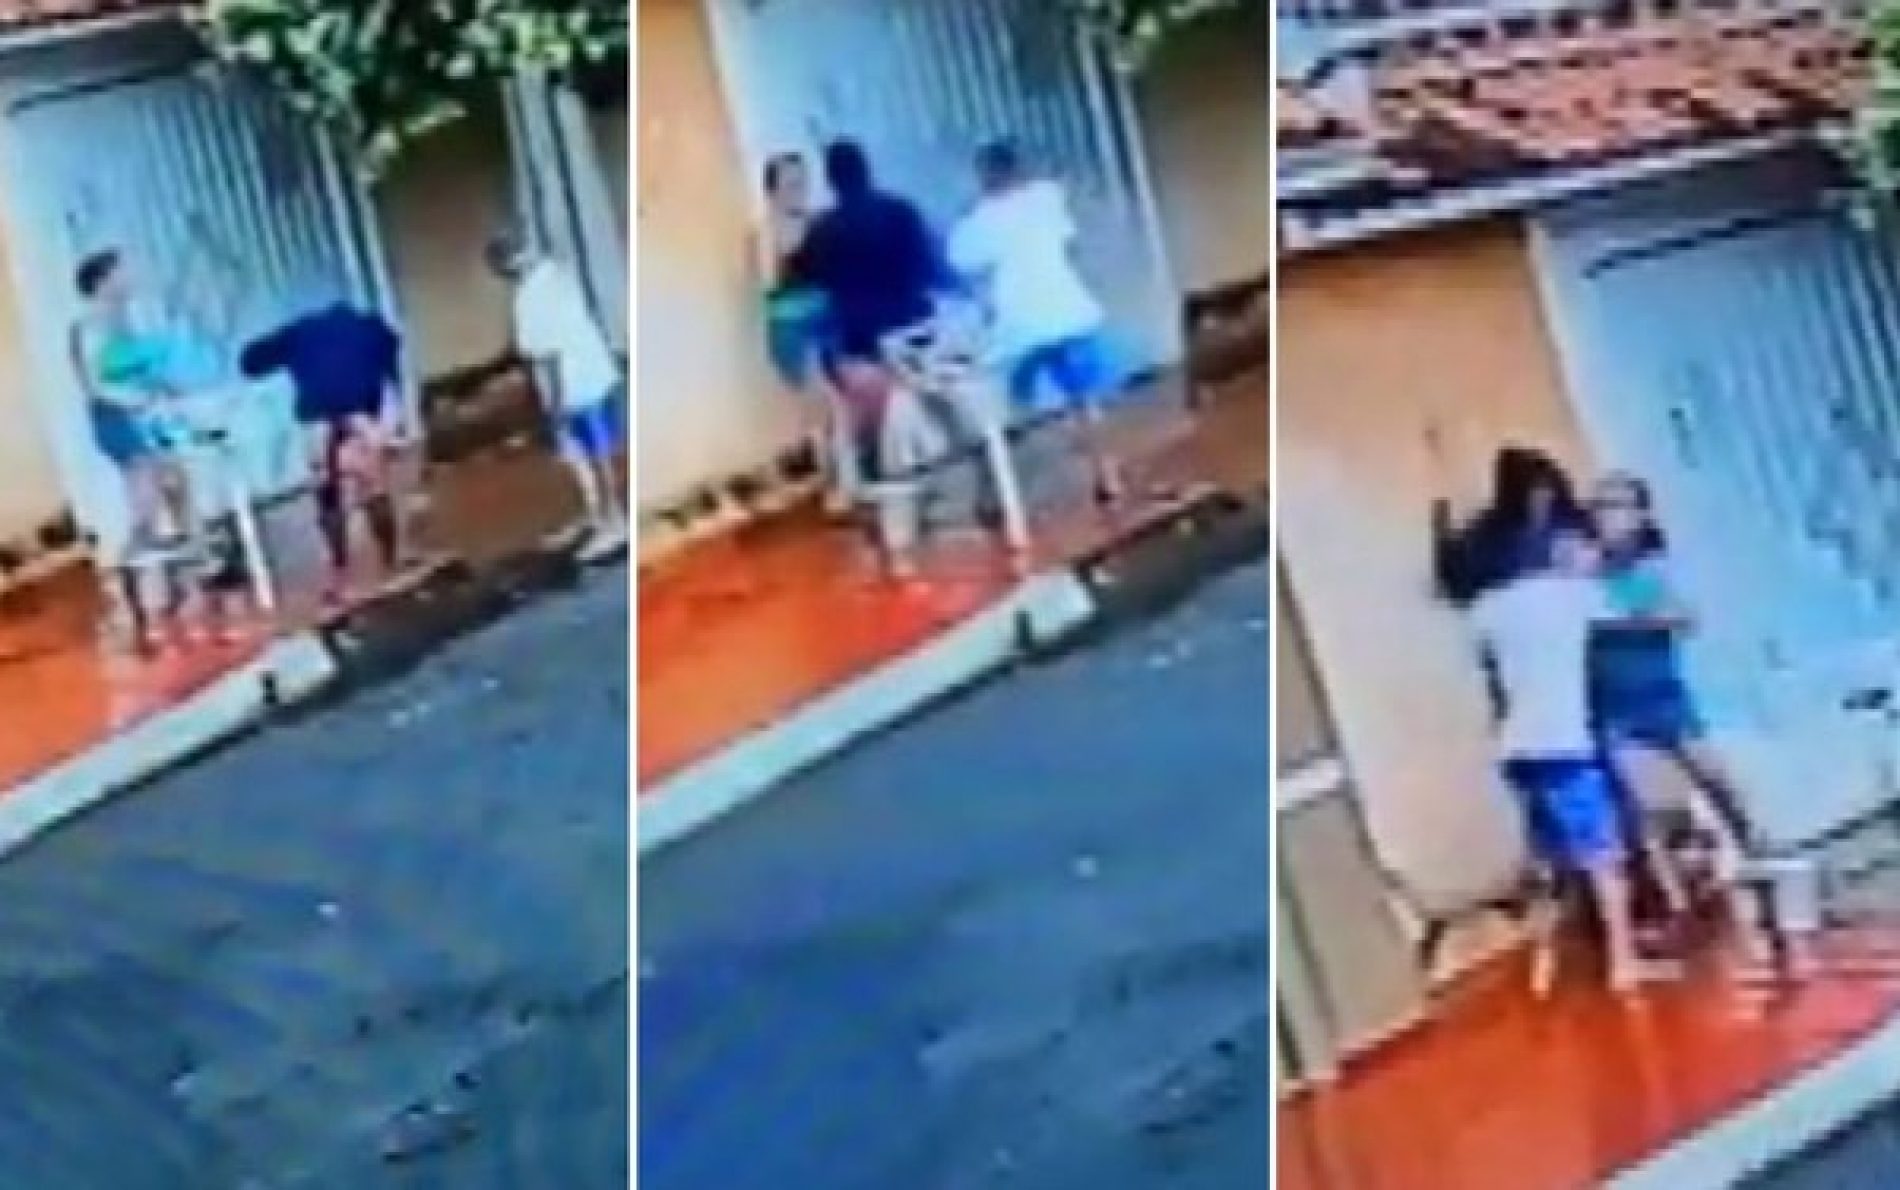 REGIÃO: Detido menor suspeito de agir em assalto com idosa agredida na porta de casa